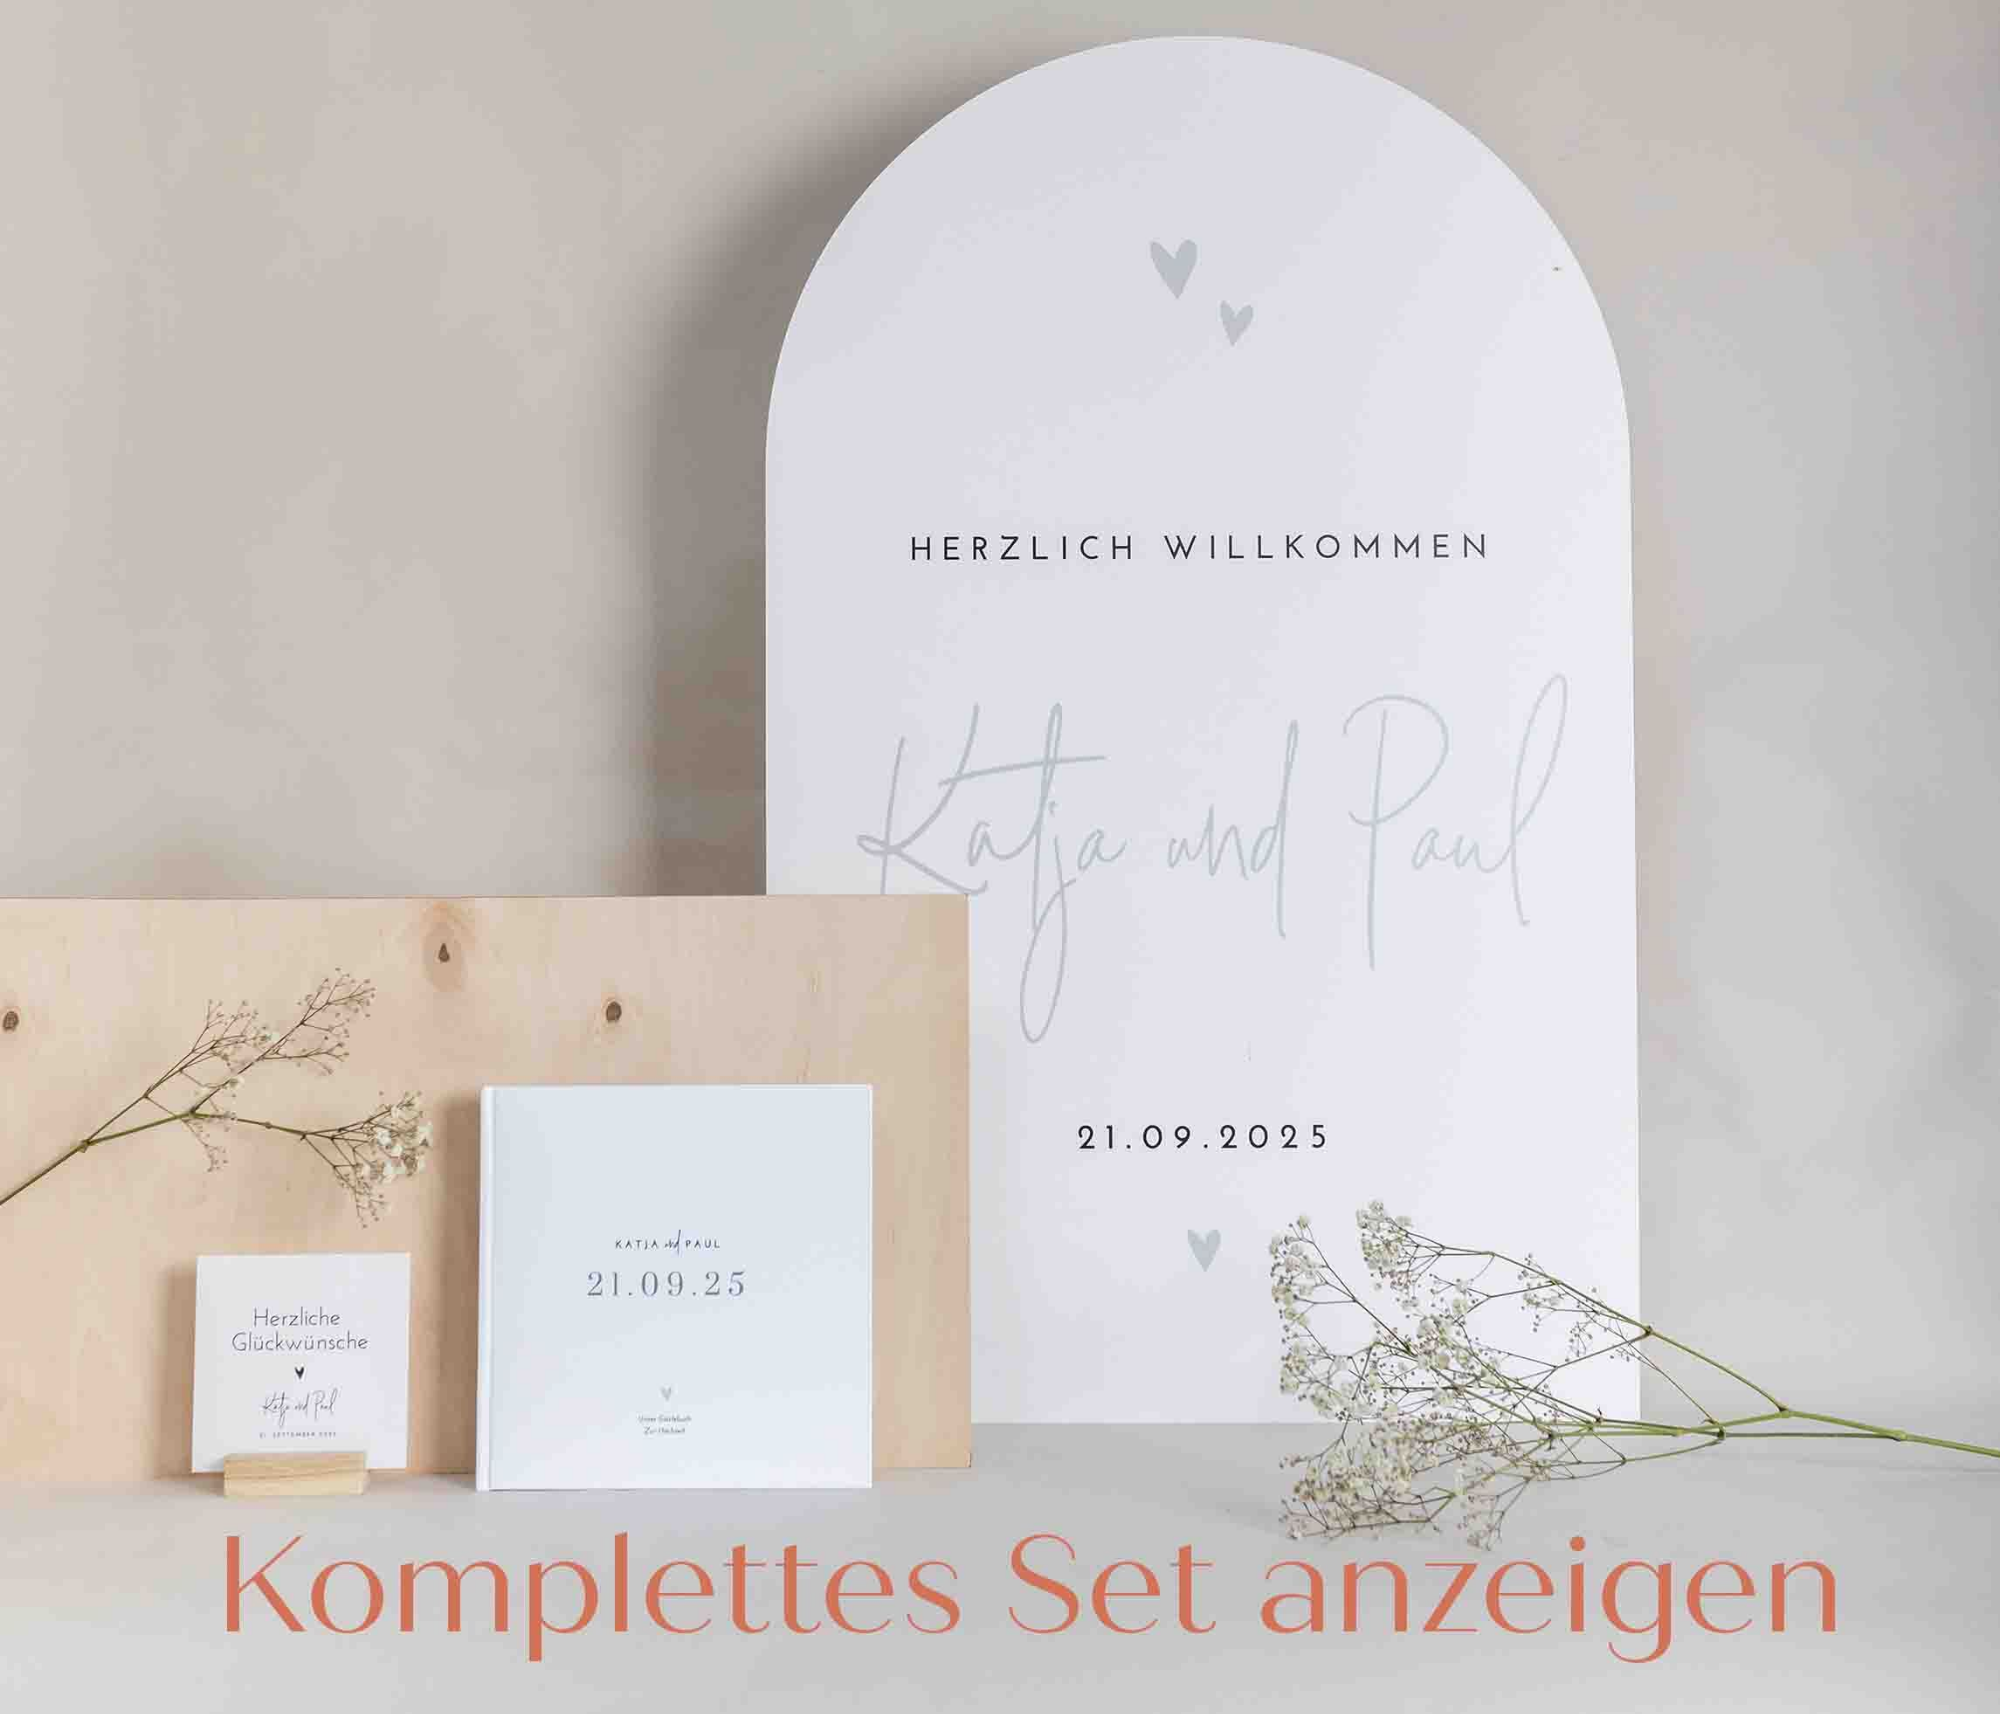 Werbung minimalistic wedding style